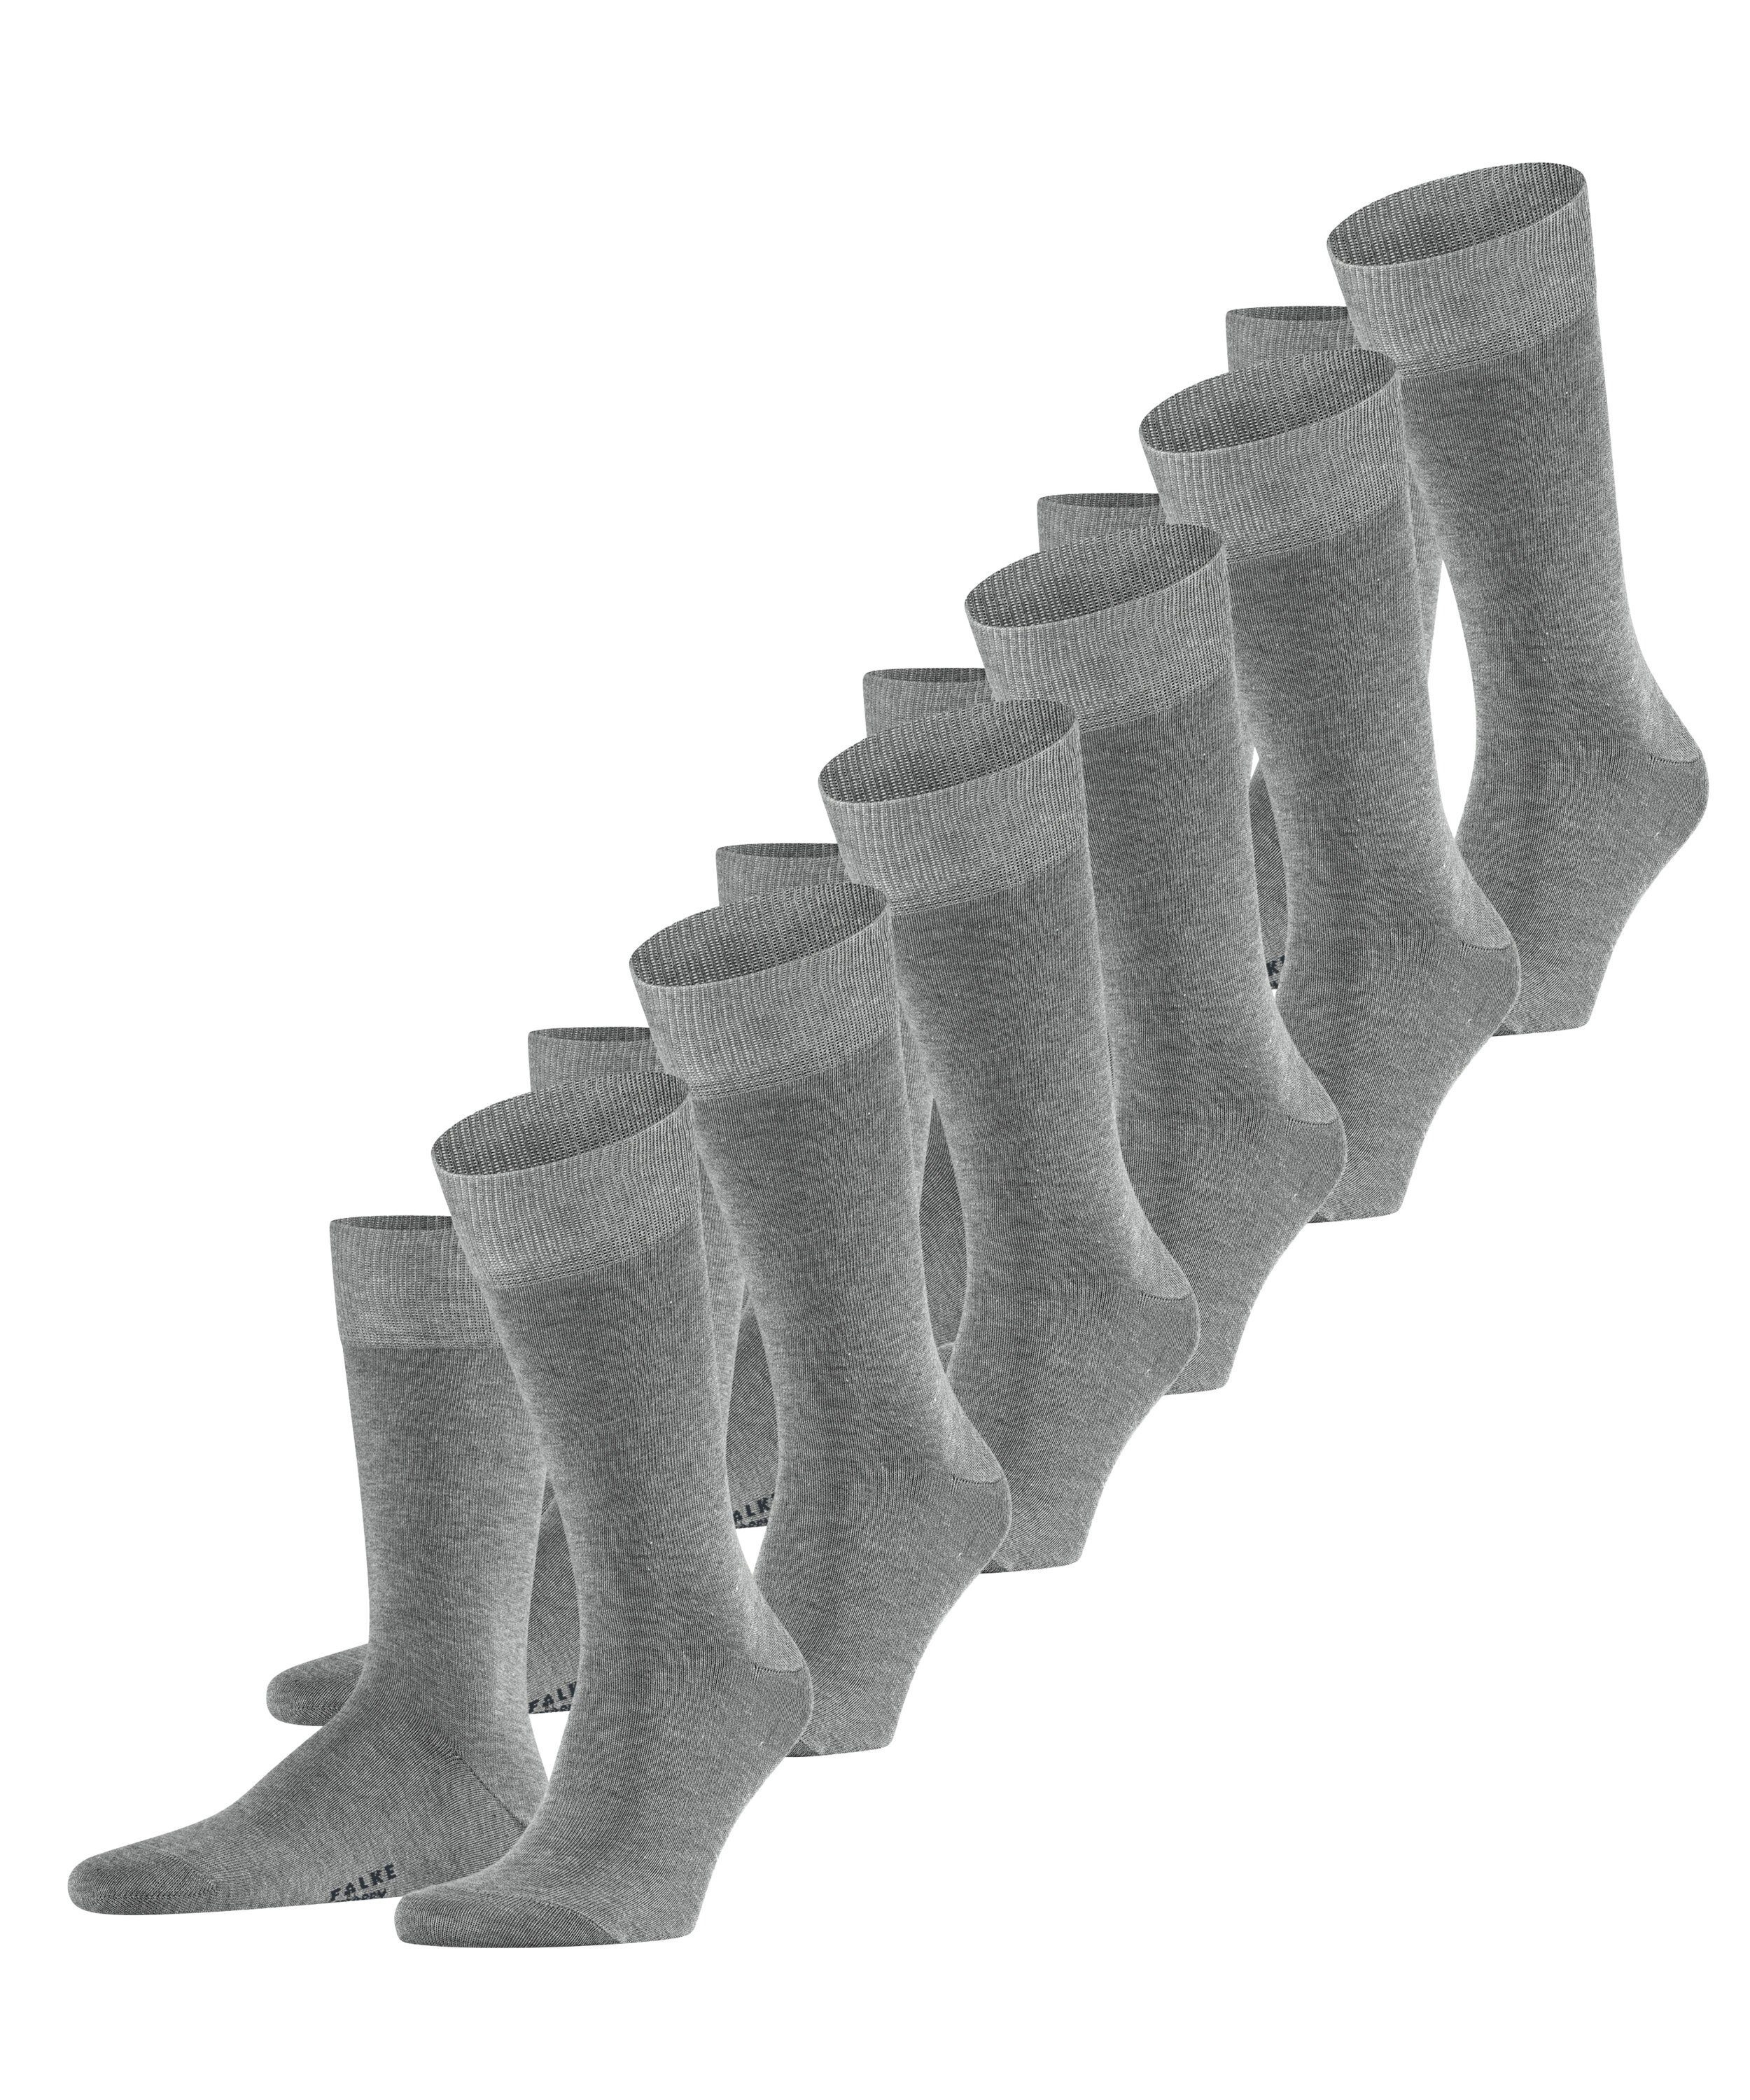 FALKE Socken Happy 6-Pack (6-Paar) light greymel. (3390) | Socken